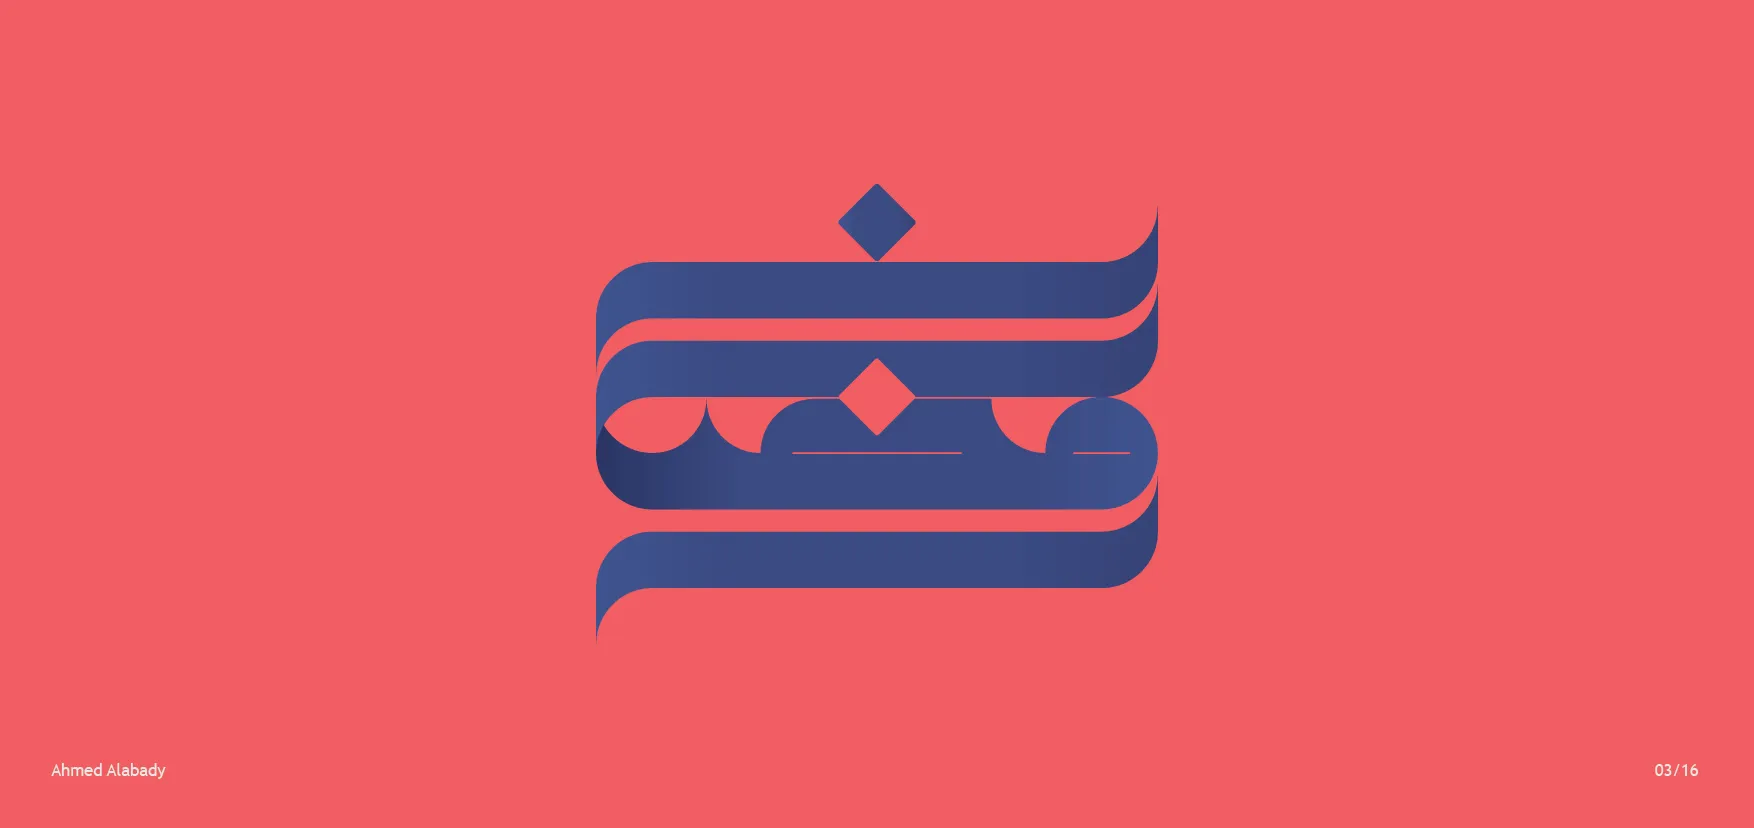 ramadan kareem vector free download